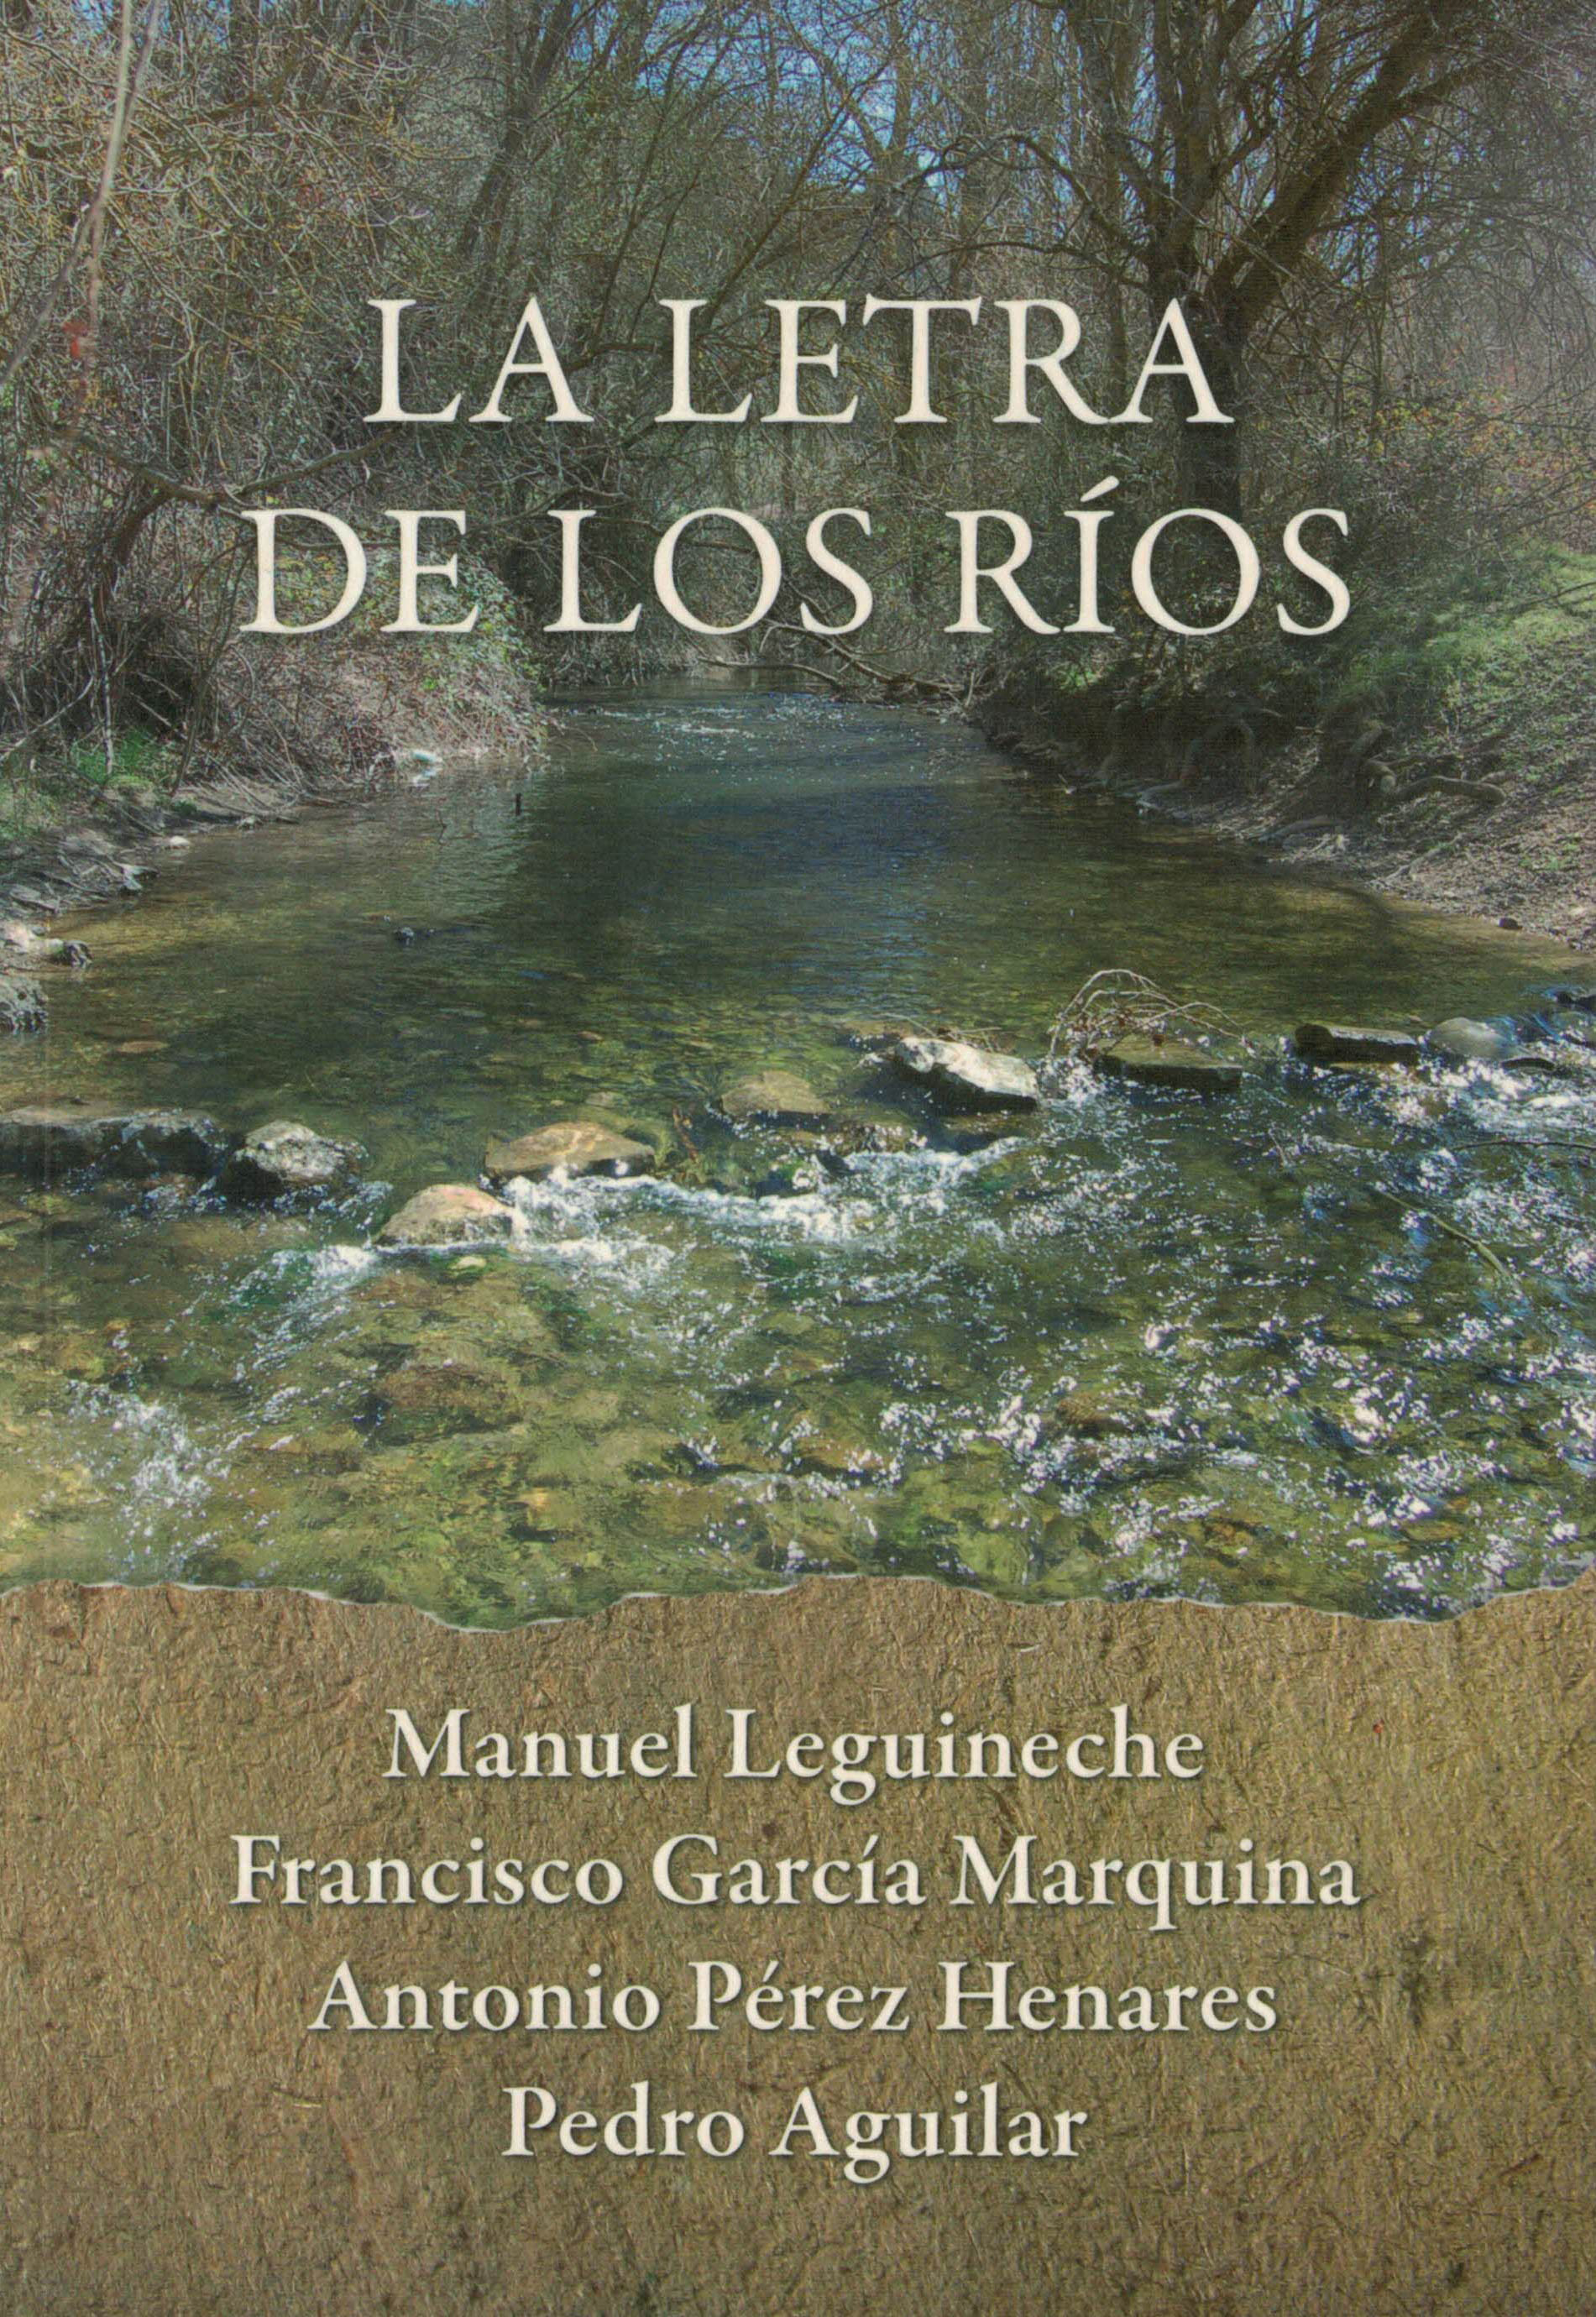 La letra de los rios, Manuel Leguineche, Francisco García Marquina, Antonio Pérez Henares, Pedro Aguilar